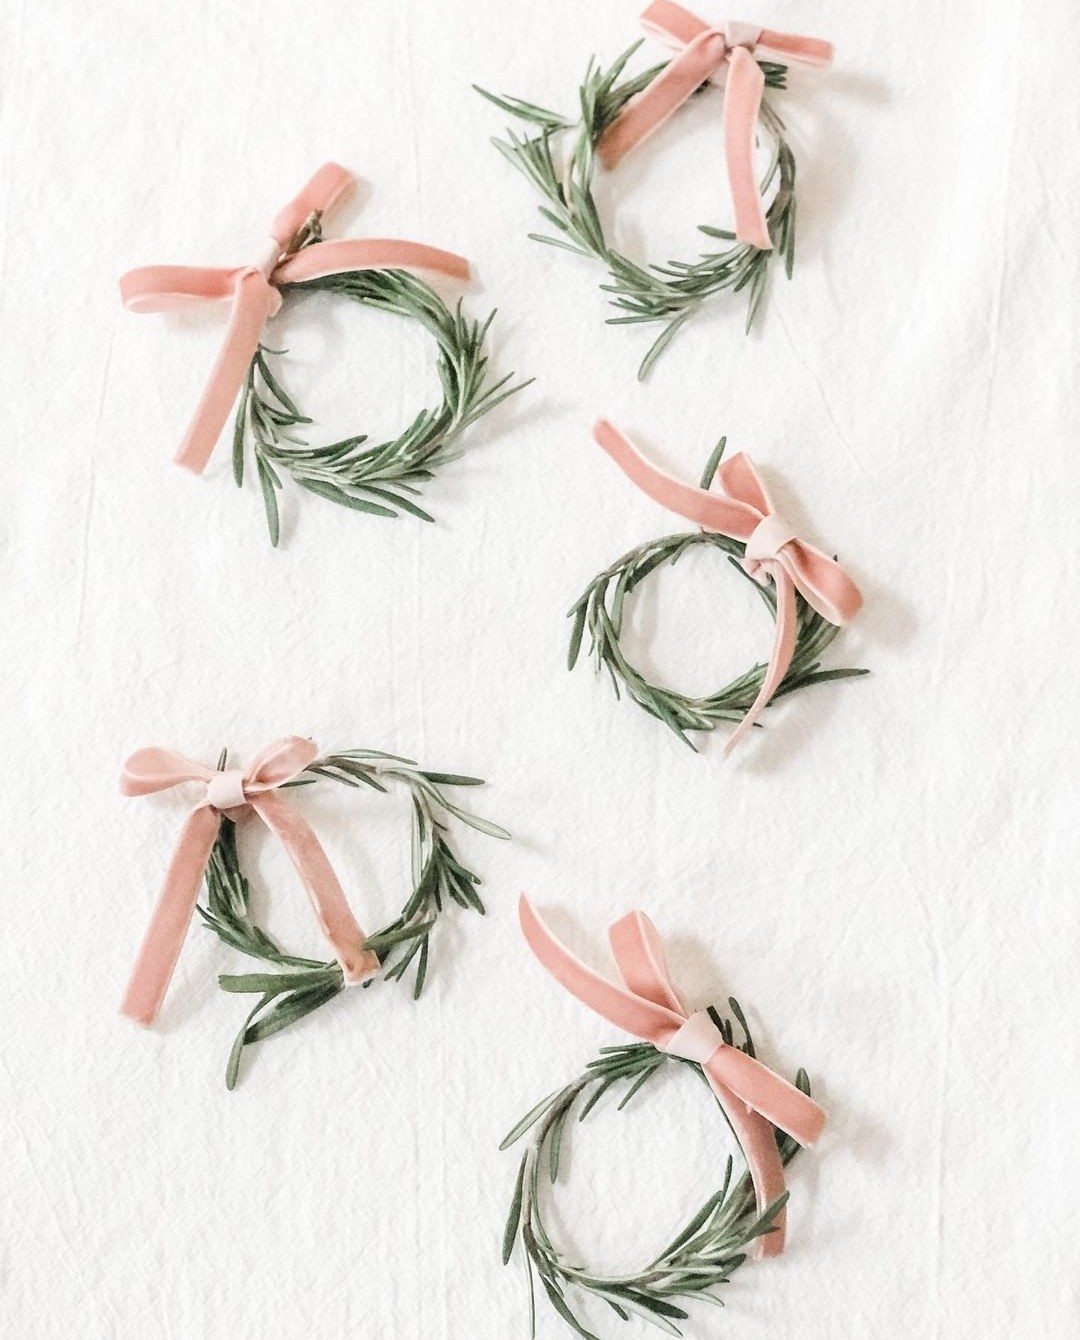 Rosemary napkin rings